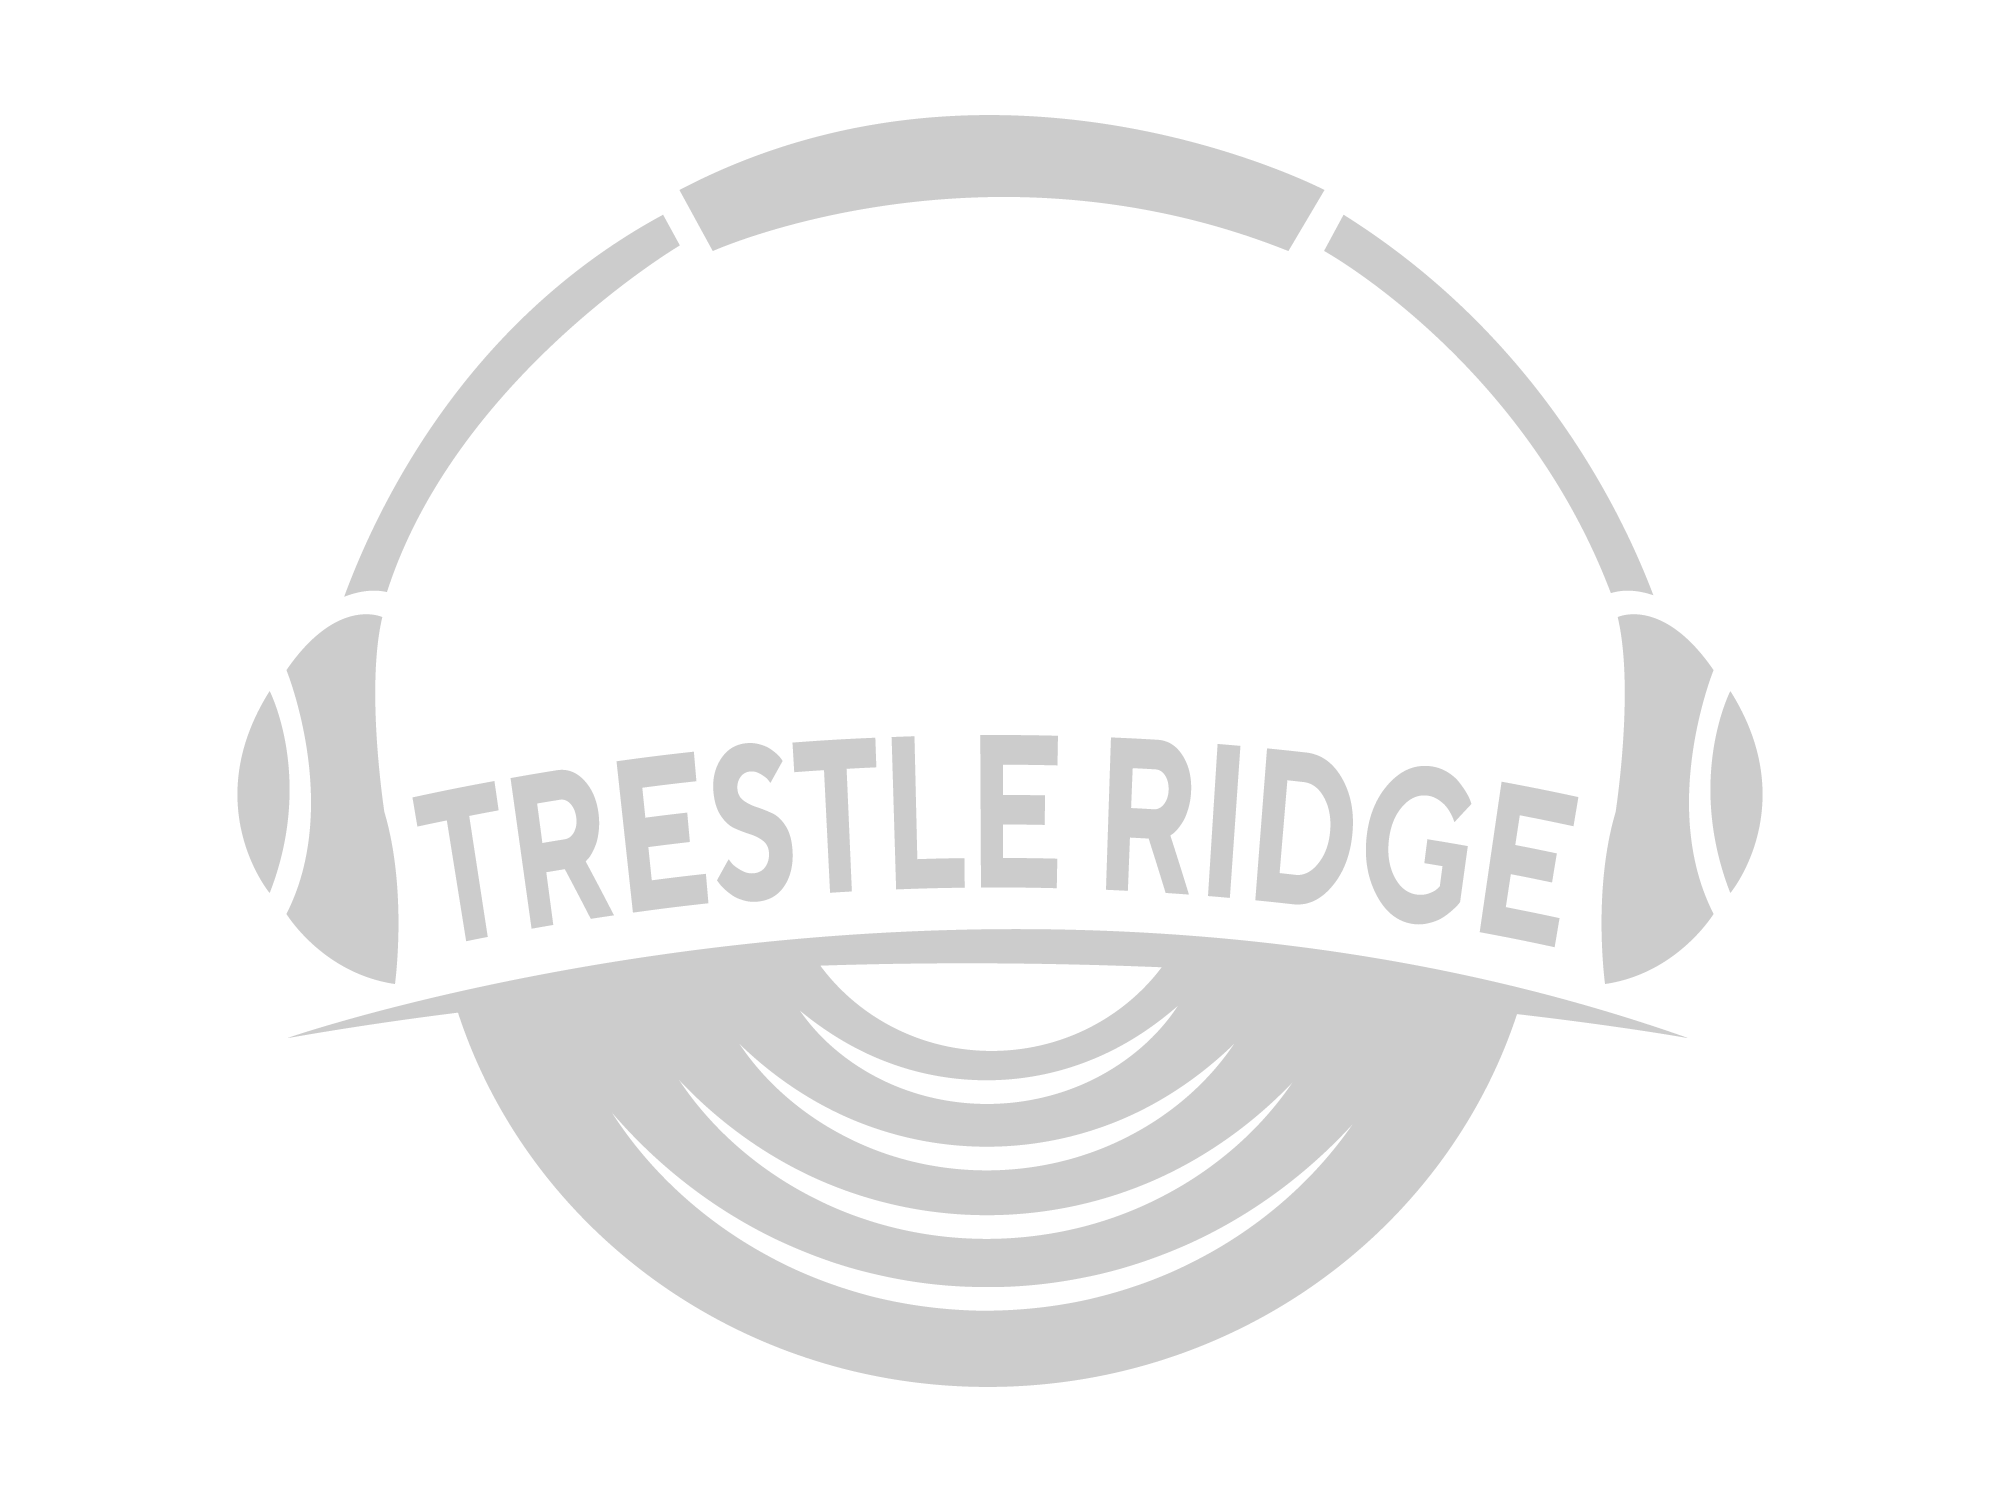 Trestle Ridge Records